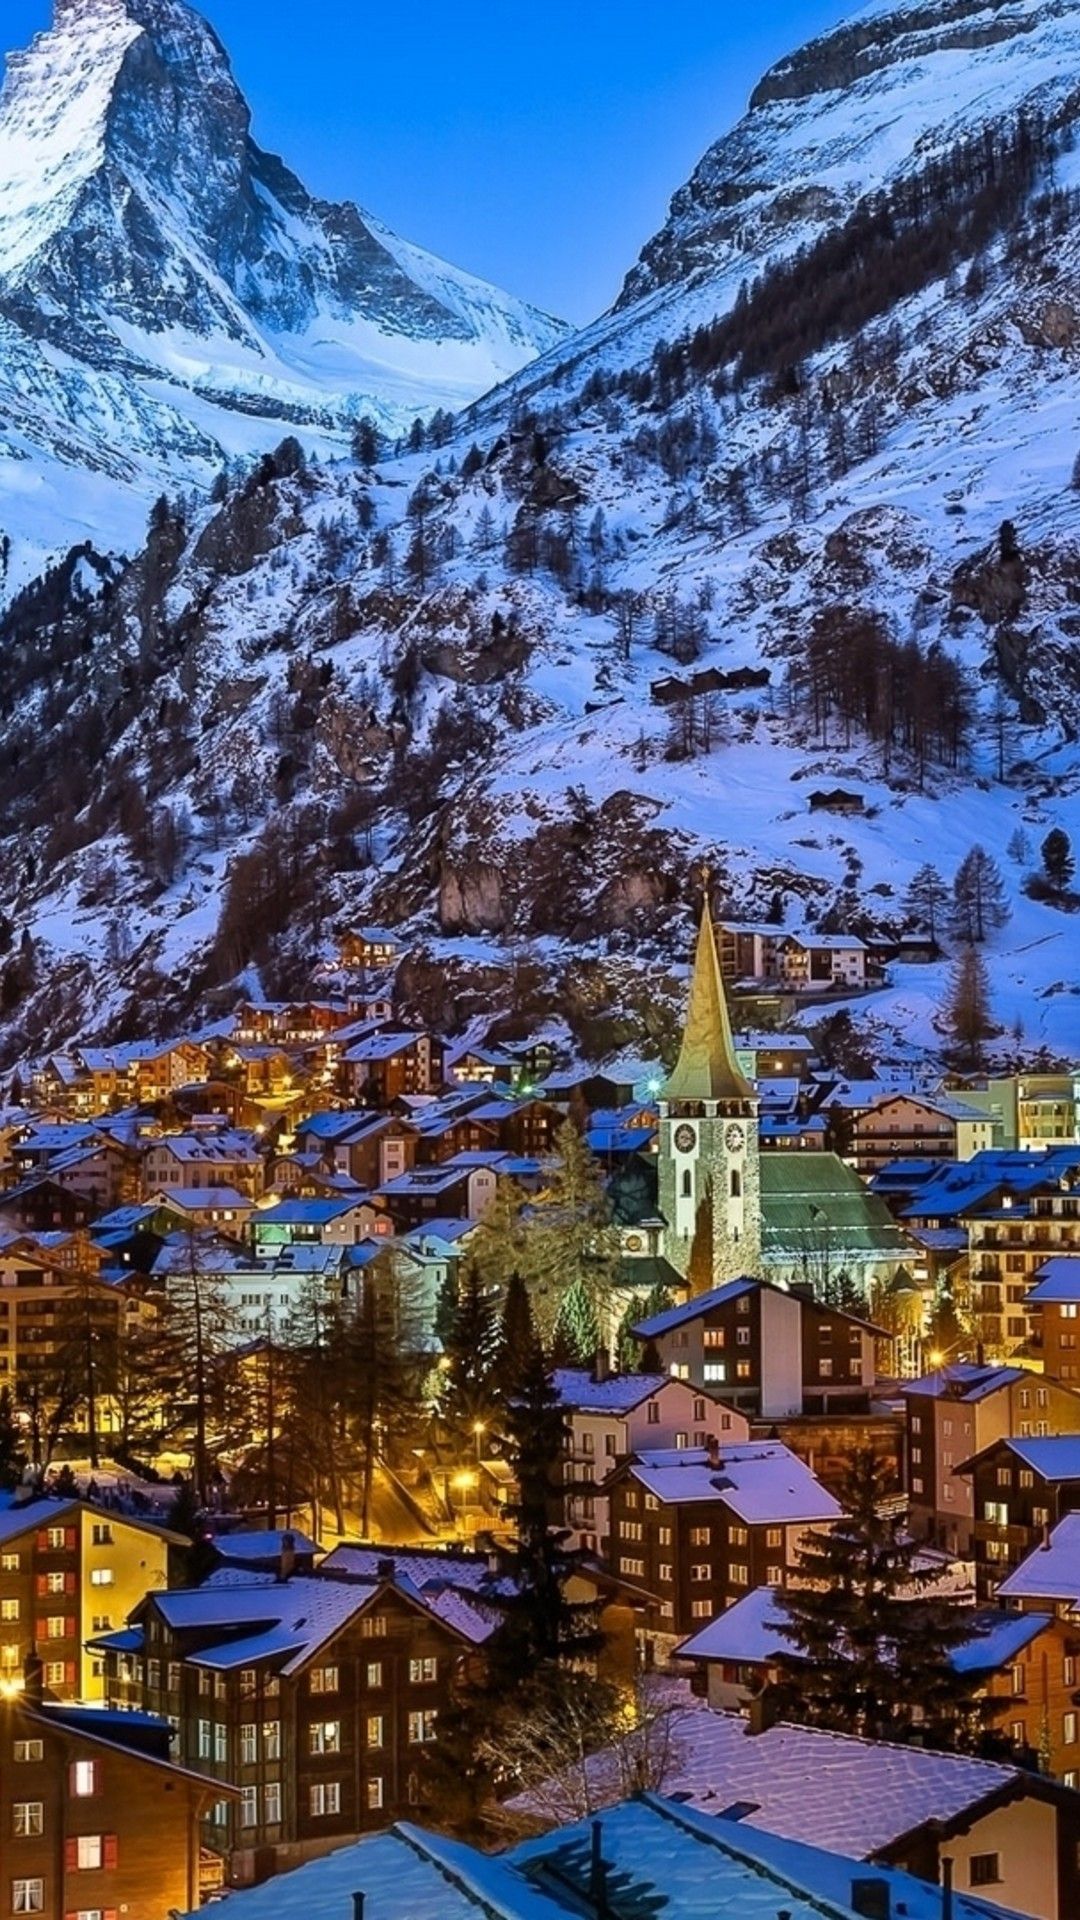 Wallpaper Download Winter At Zermatt Valley Switzerland - Switzerland Winter , HD Wallpaper & Backgrounds